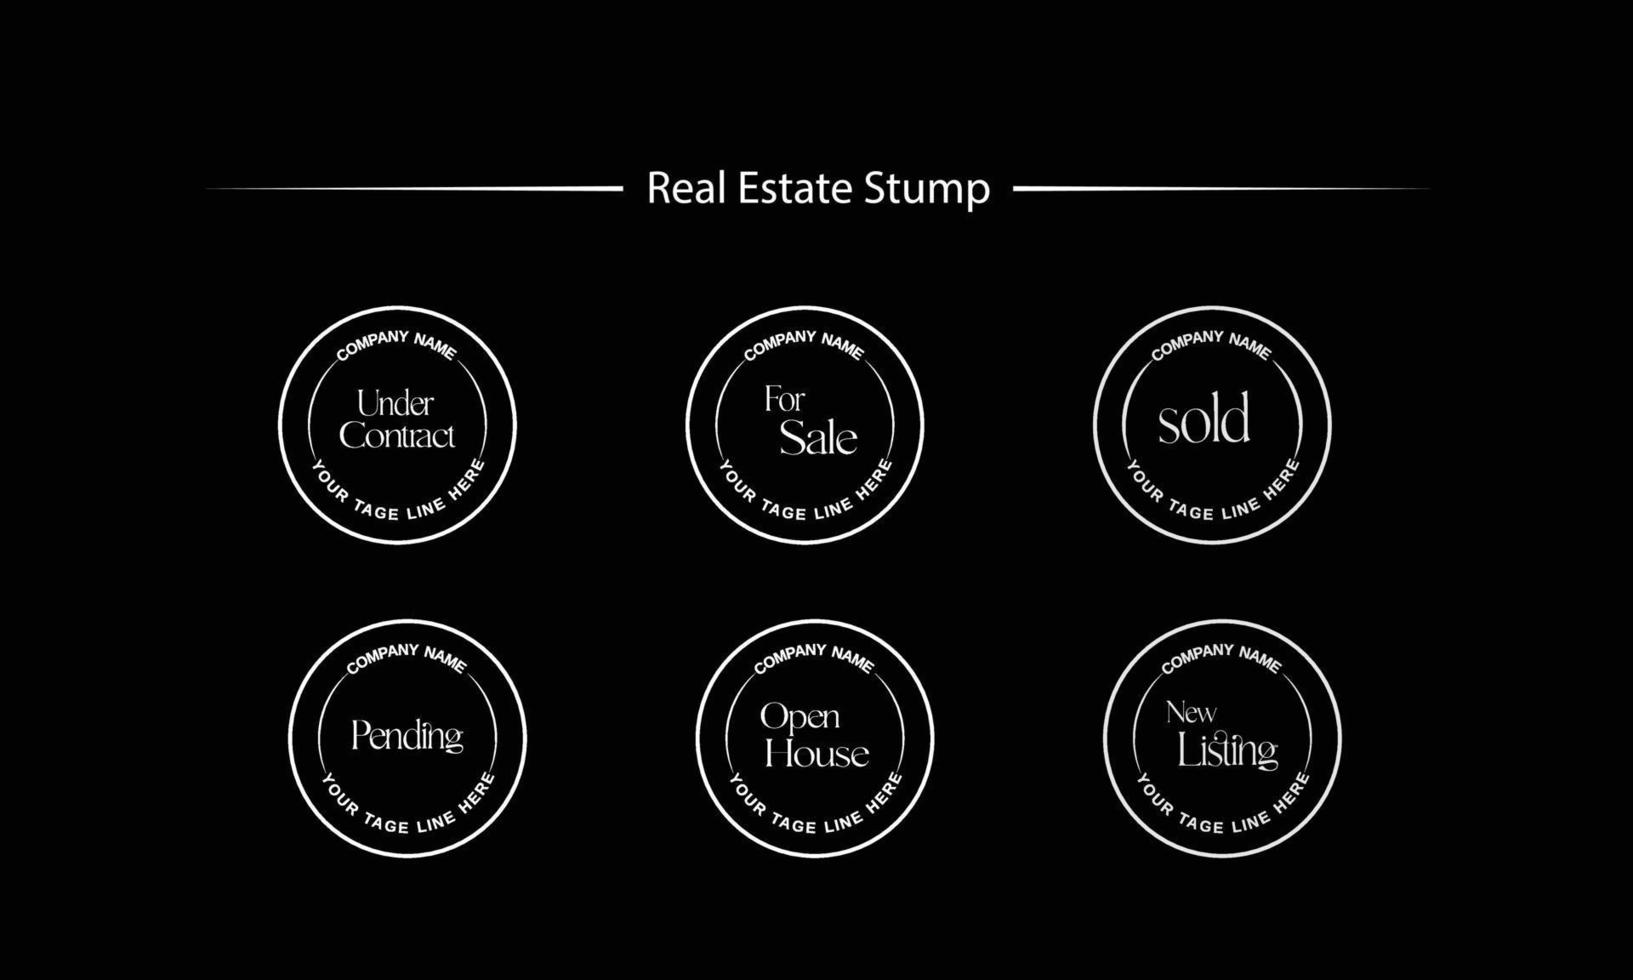 immobilien-logo-vorlage mit goldenen premium-abzeichen im kreativen stil für verkauften vektor des makler-logos